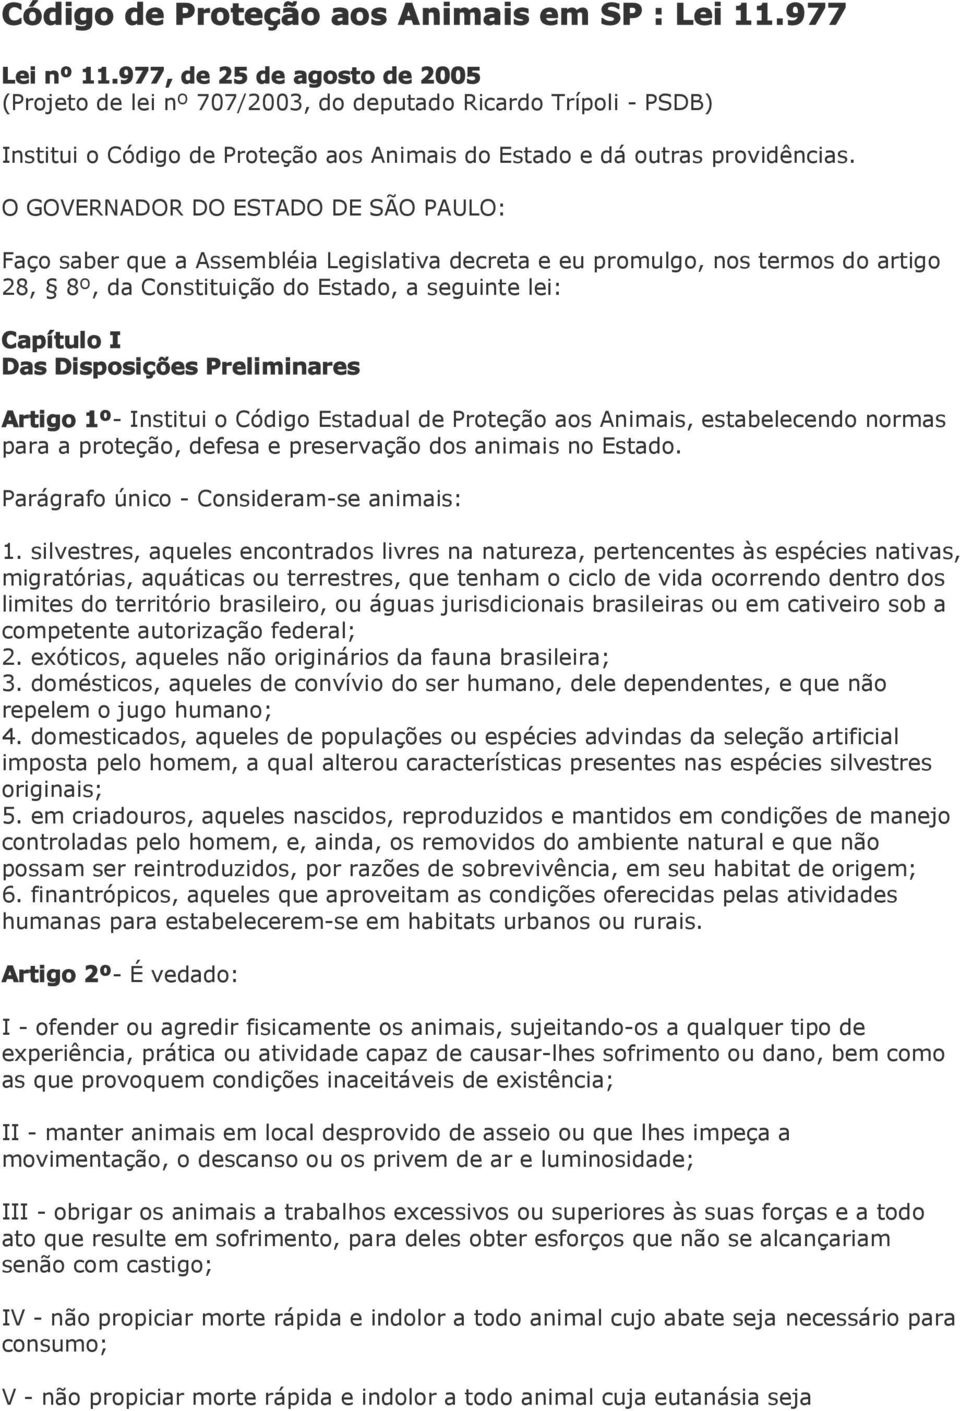 O GOVERNADOR DO ESTADO DE SÃO PAULO: Faço saber que a Assembléia Legislativa decreta e eu promulgo, nos termos do artigo 28, 8º, da Constituição do Estado, a seguinte lei: Capítulo I Das Disposições